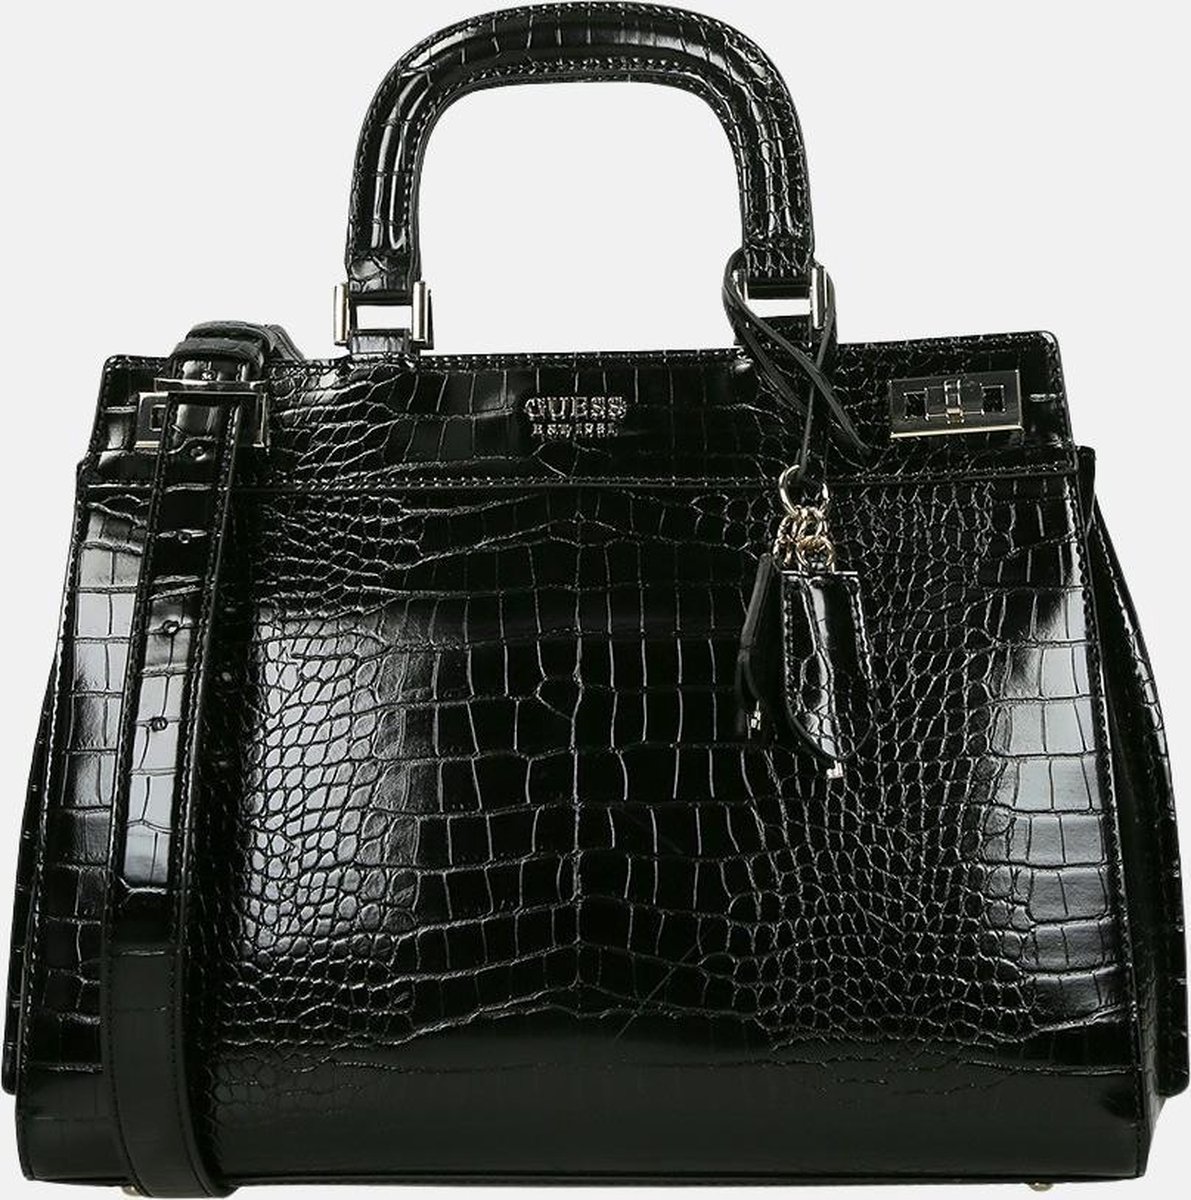 zwarte guess handtas katey luxury satchel